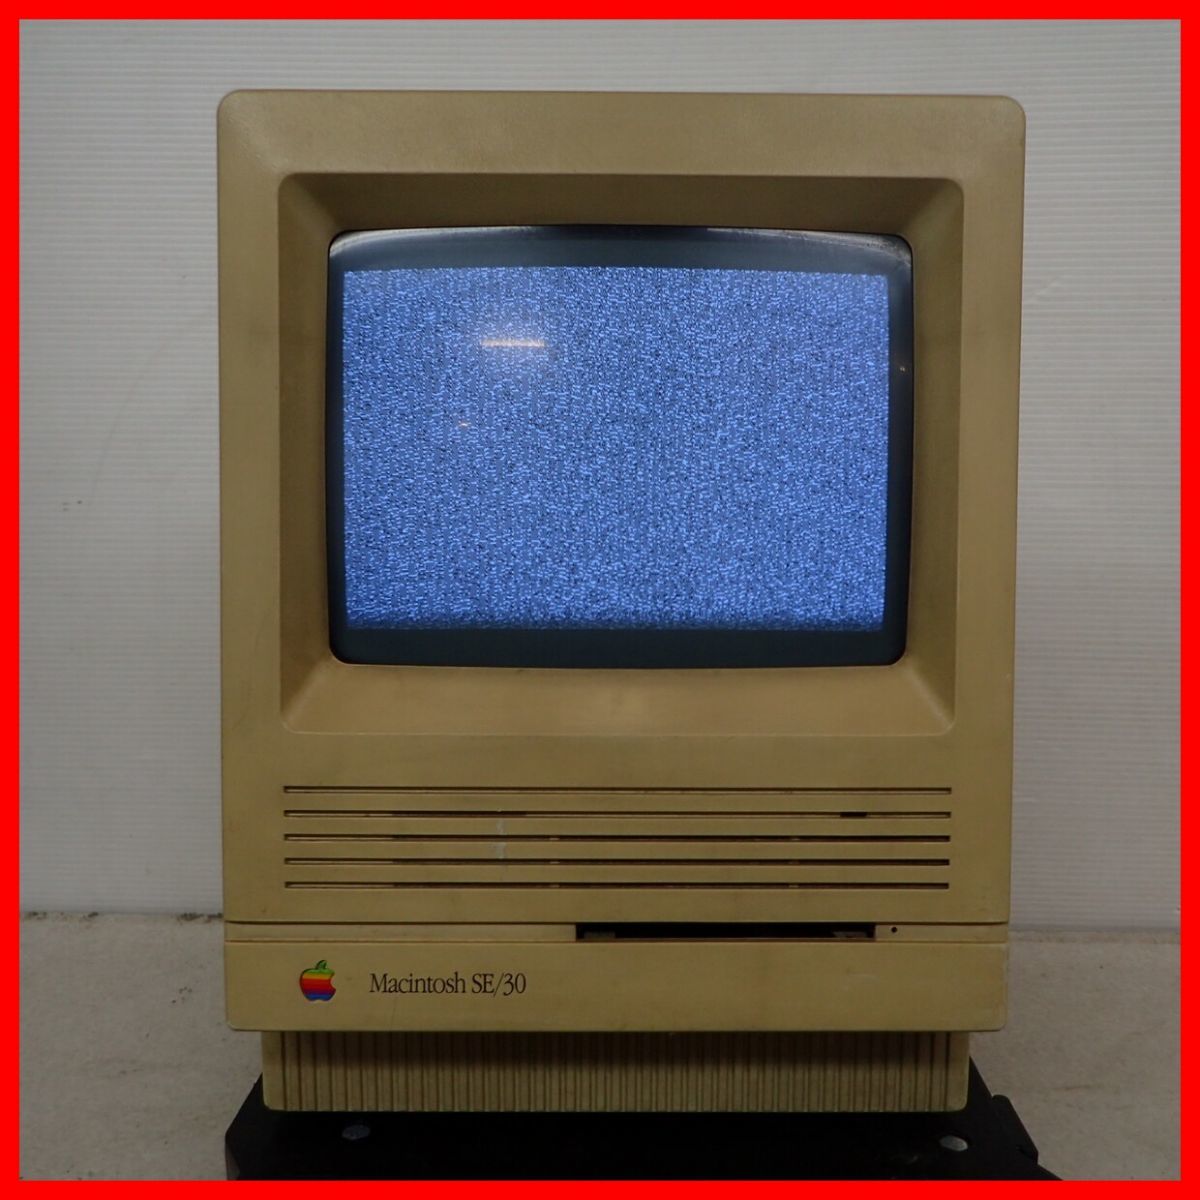 ◇Apple パーソナルコンピュータ Macintosh SE/30 M5119 レトロPC